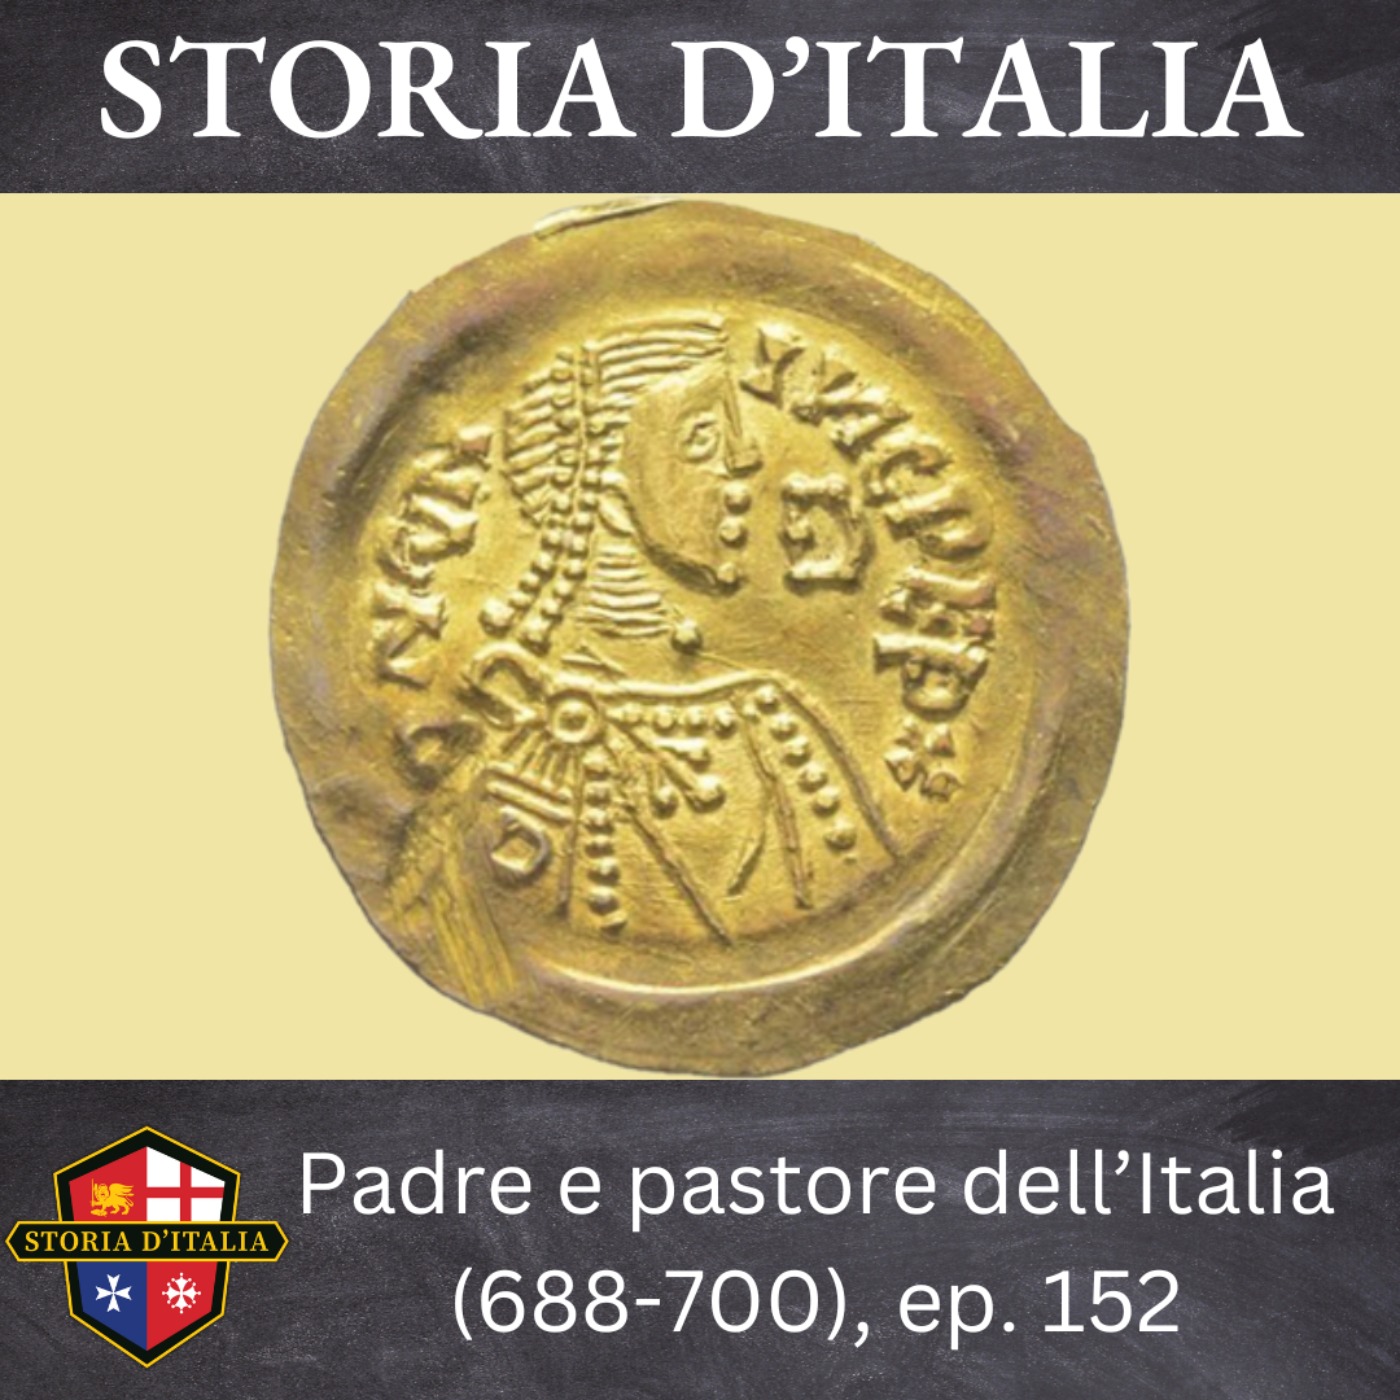 Padre e pastore dell’Italia (688-700), ep. 152